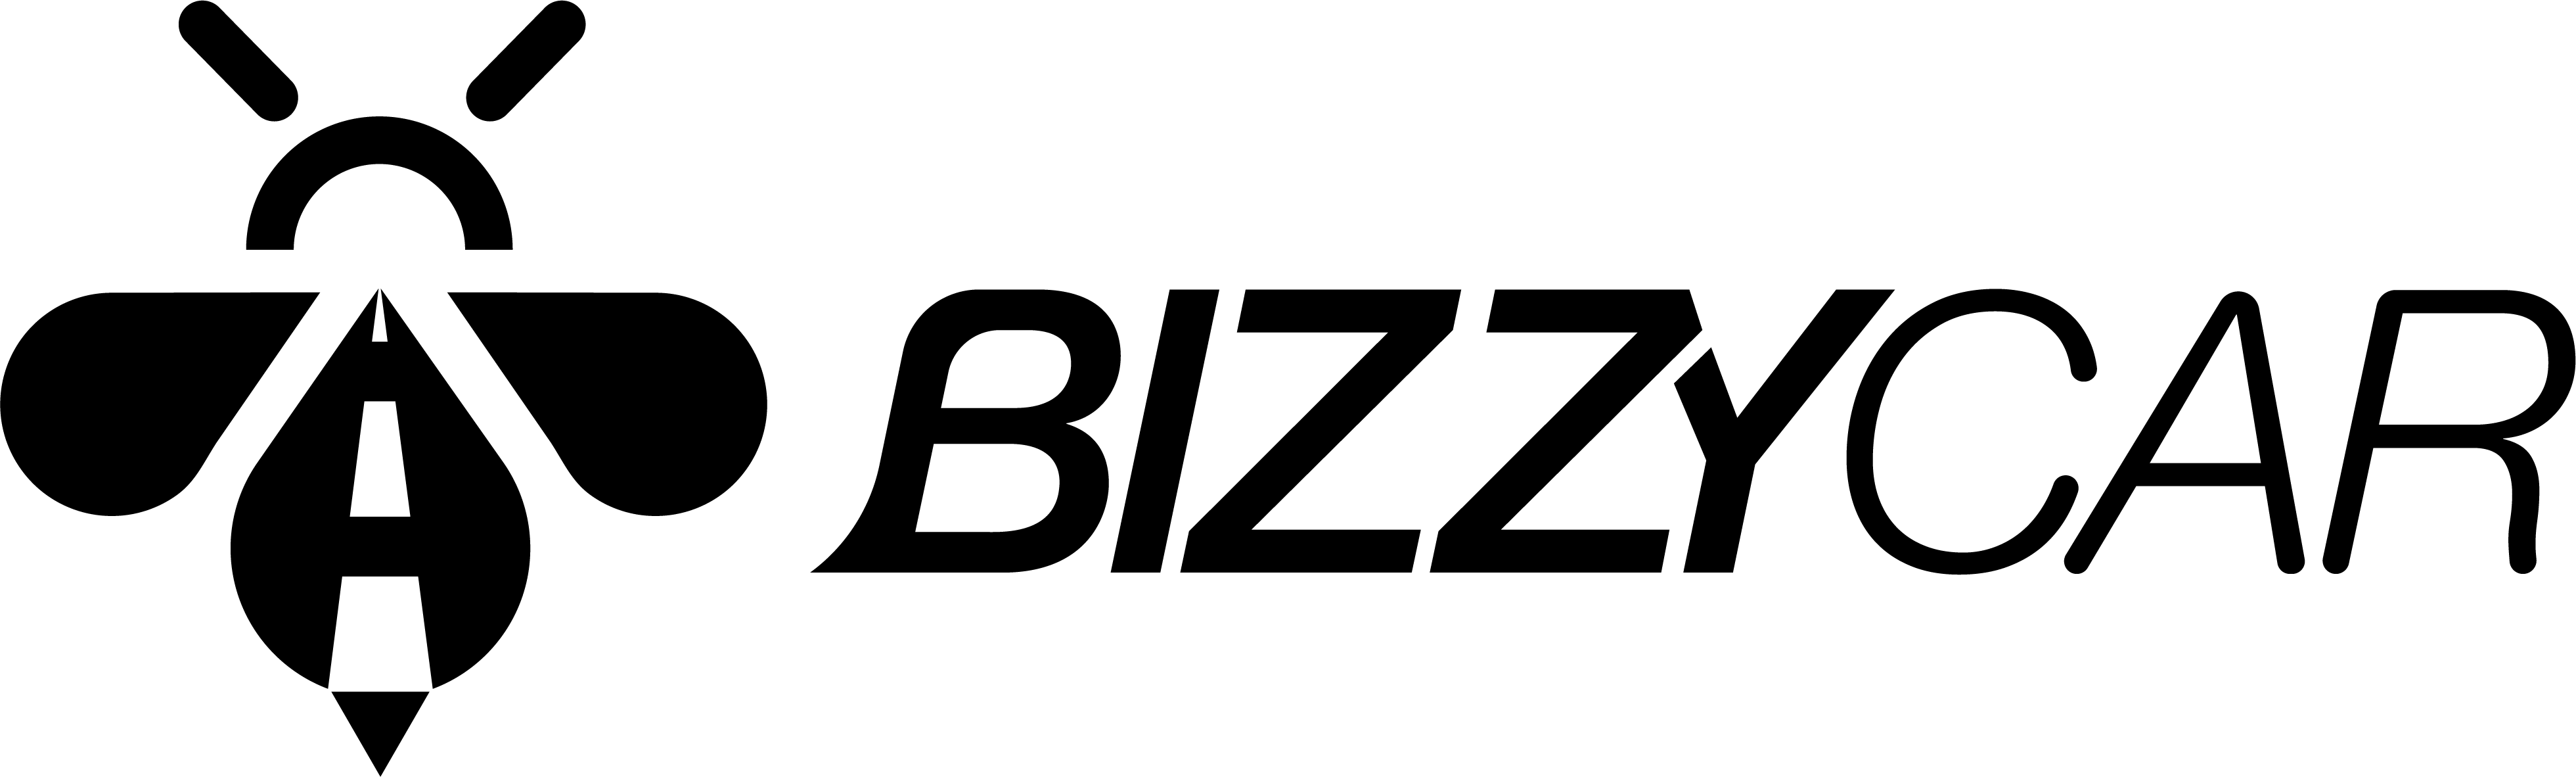 full-logo-black (3)